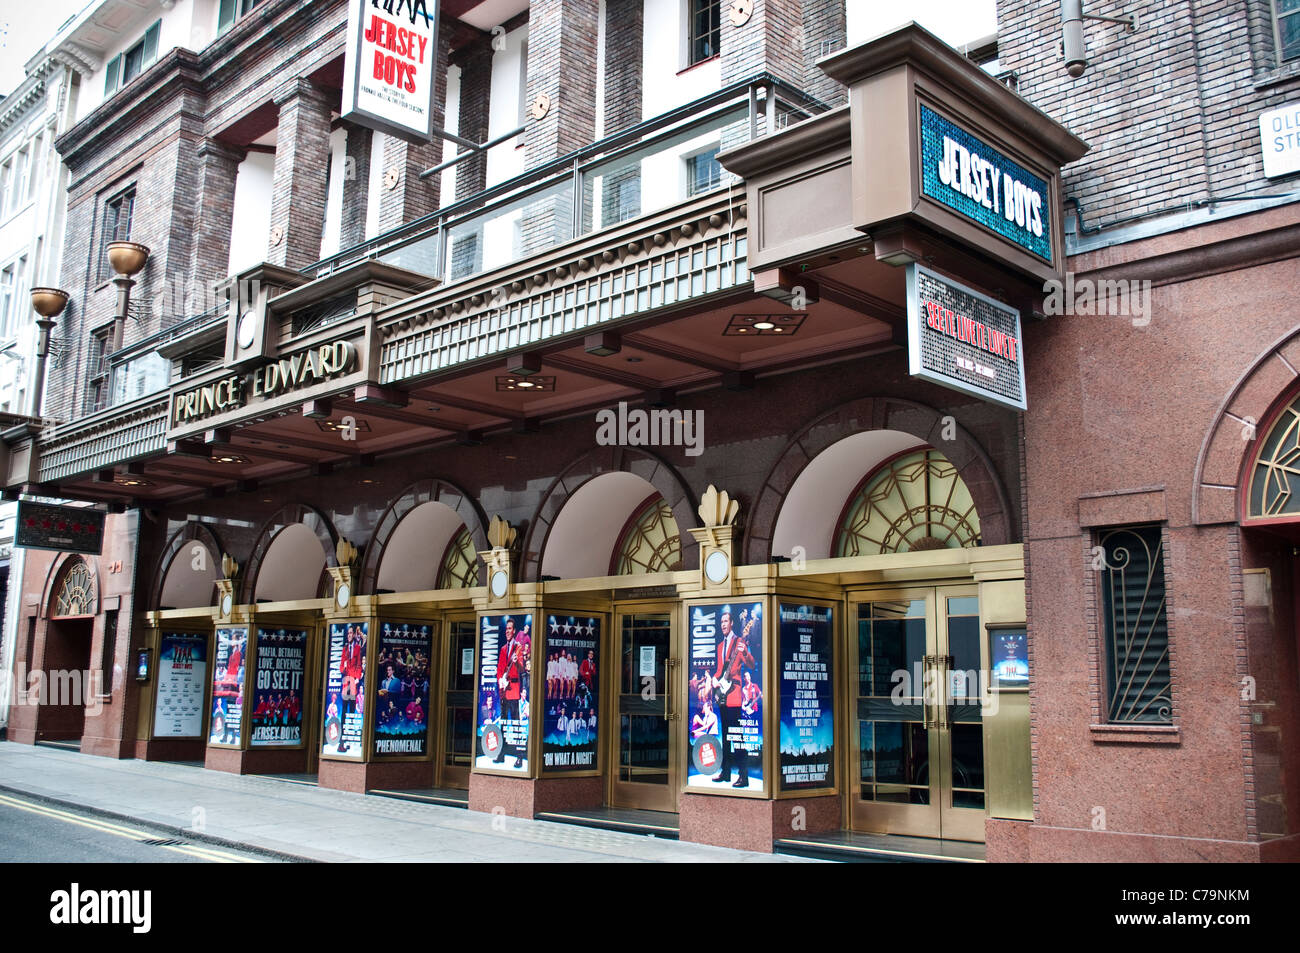 Prince Edward Theatre sur Old Compton Street montrant Jersey Boys comédie musicale, Londres, Royaume-Uni Banque D'Images